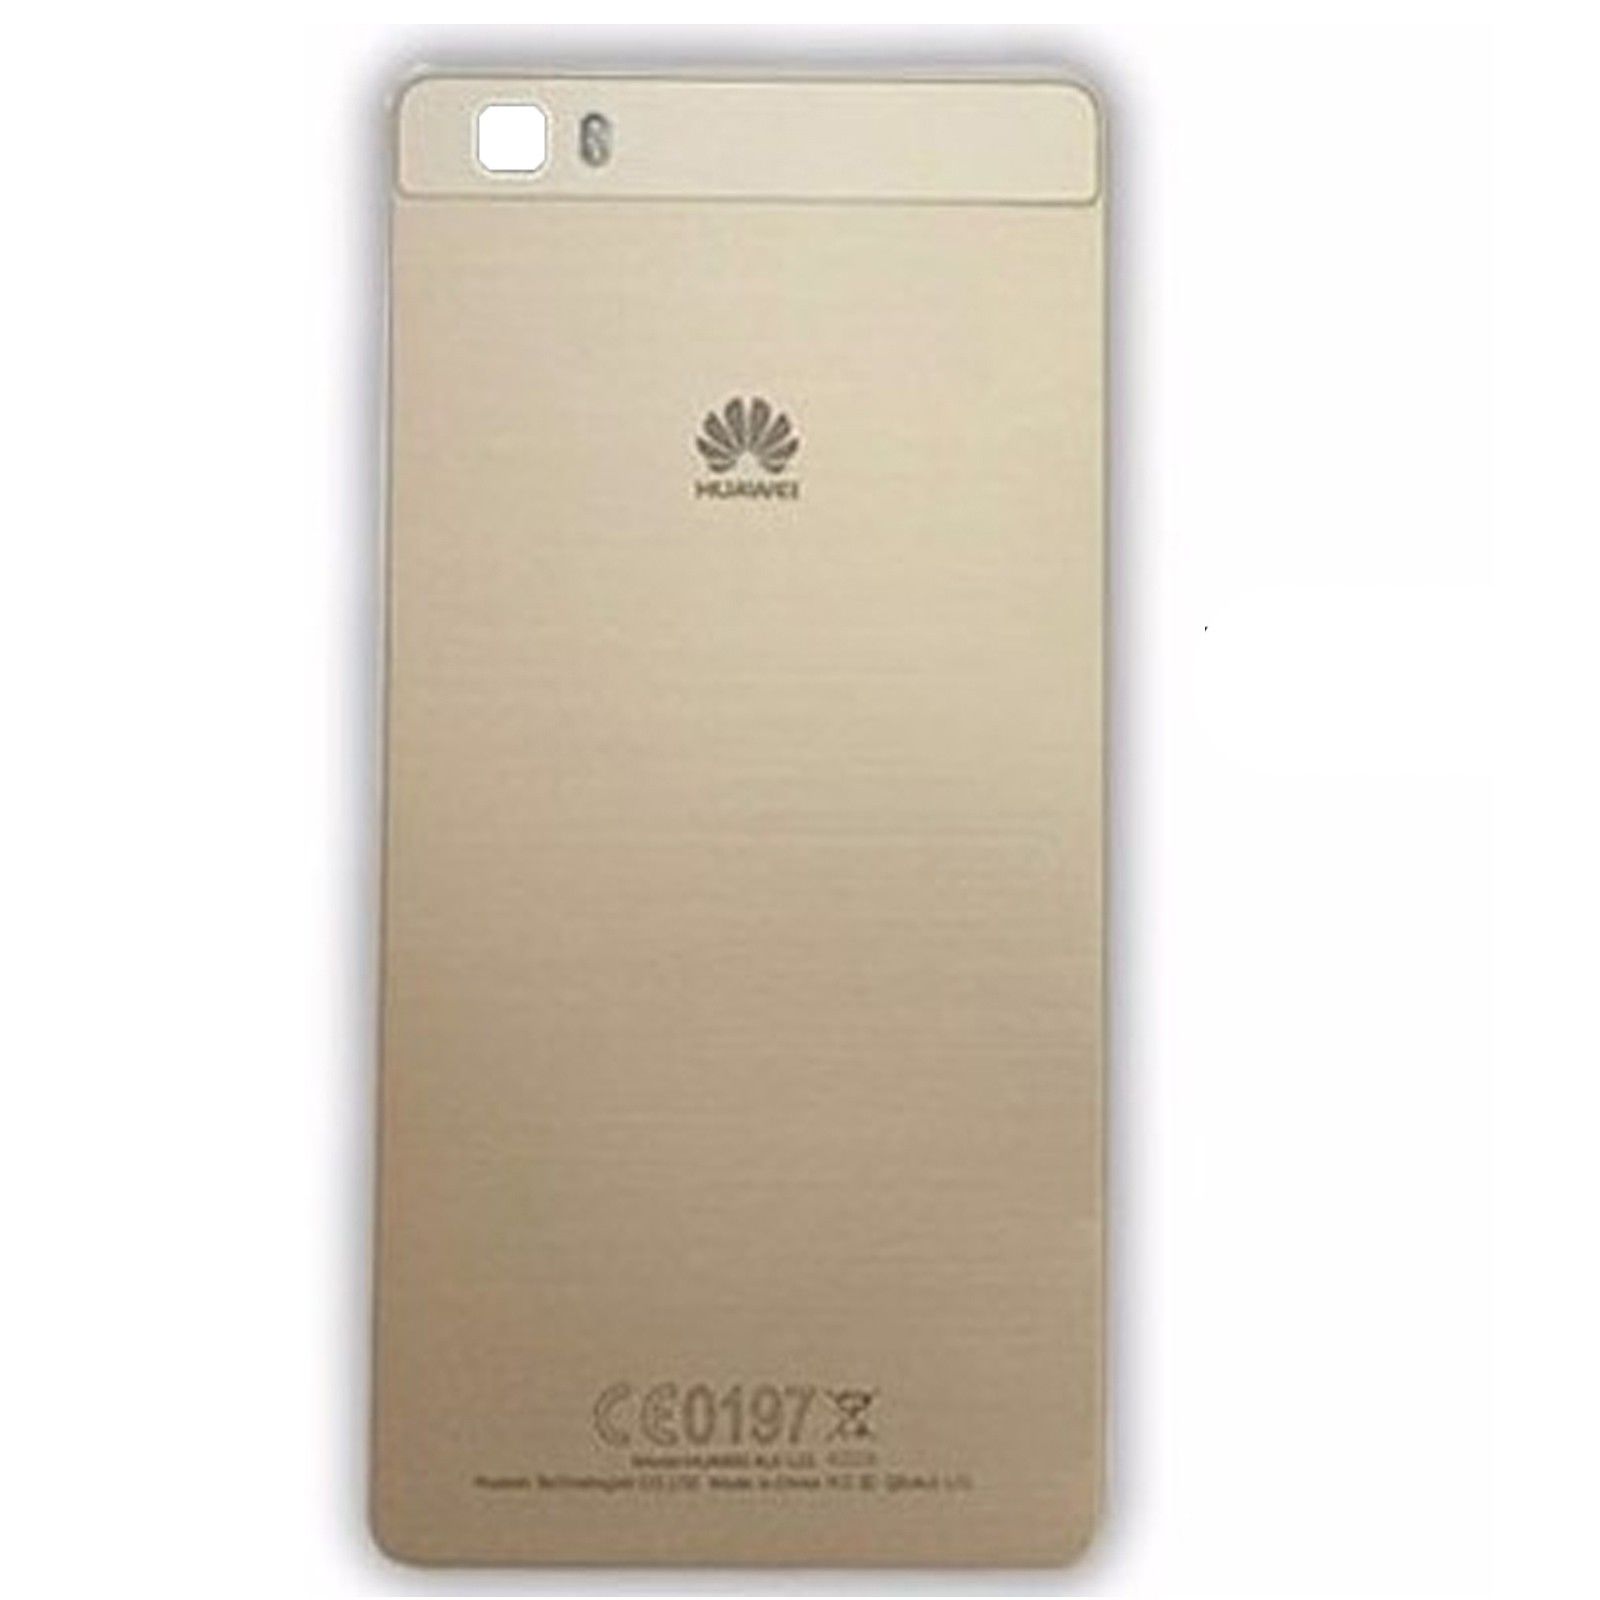 Eerlijk Afslachten Is Back cover Huawei P8 Lite d'Oro - DiscoAzul.it